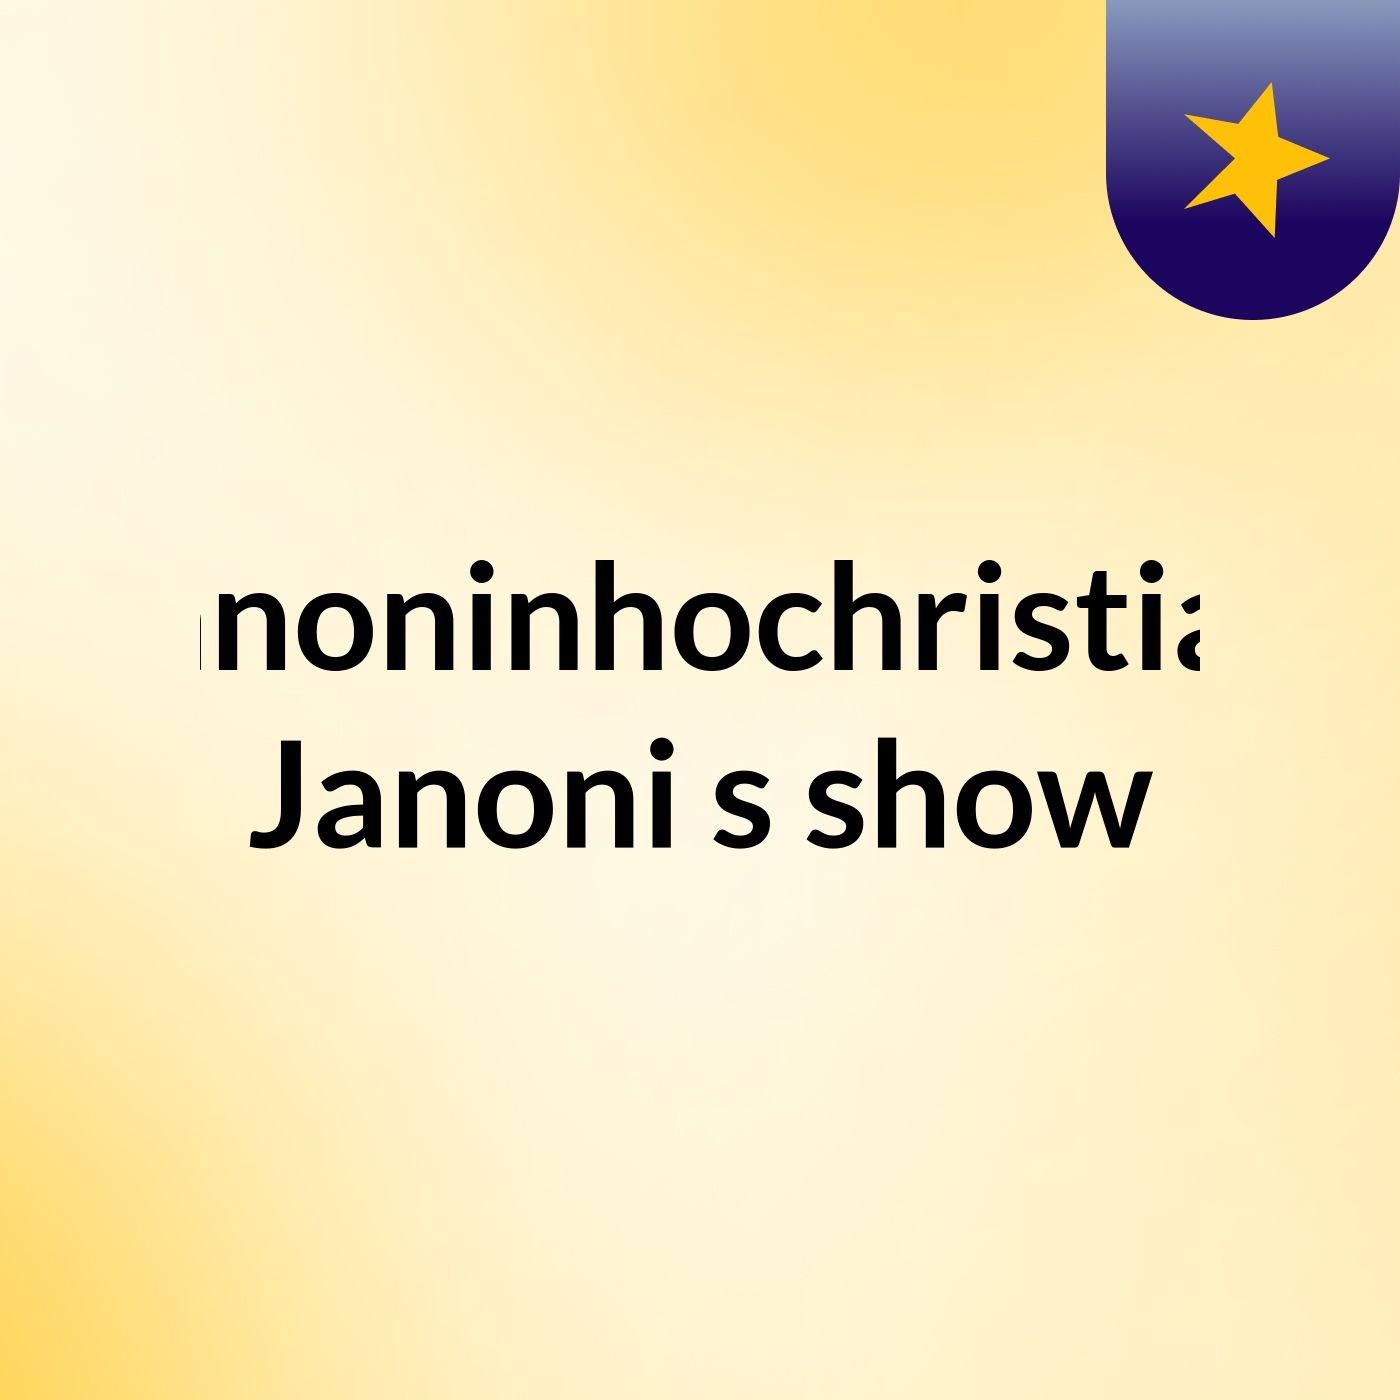 Janoninhochristian Janoni's show